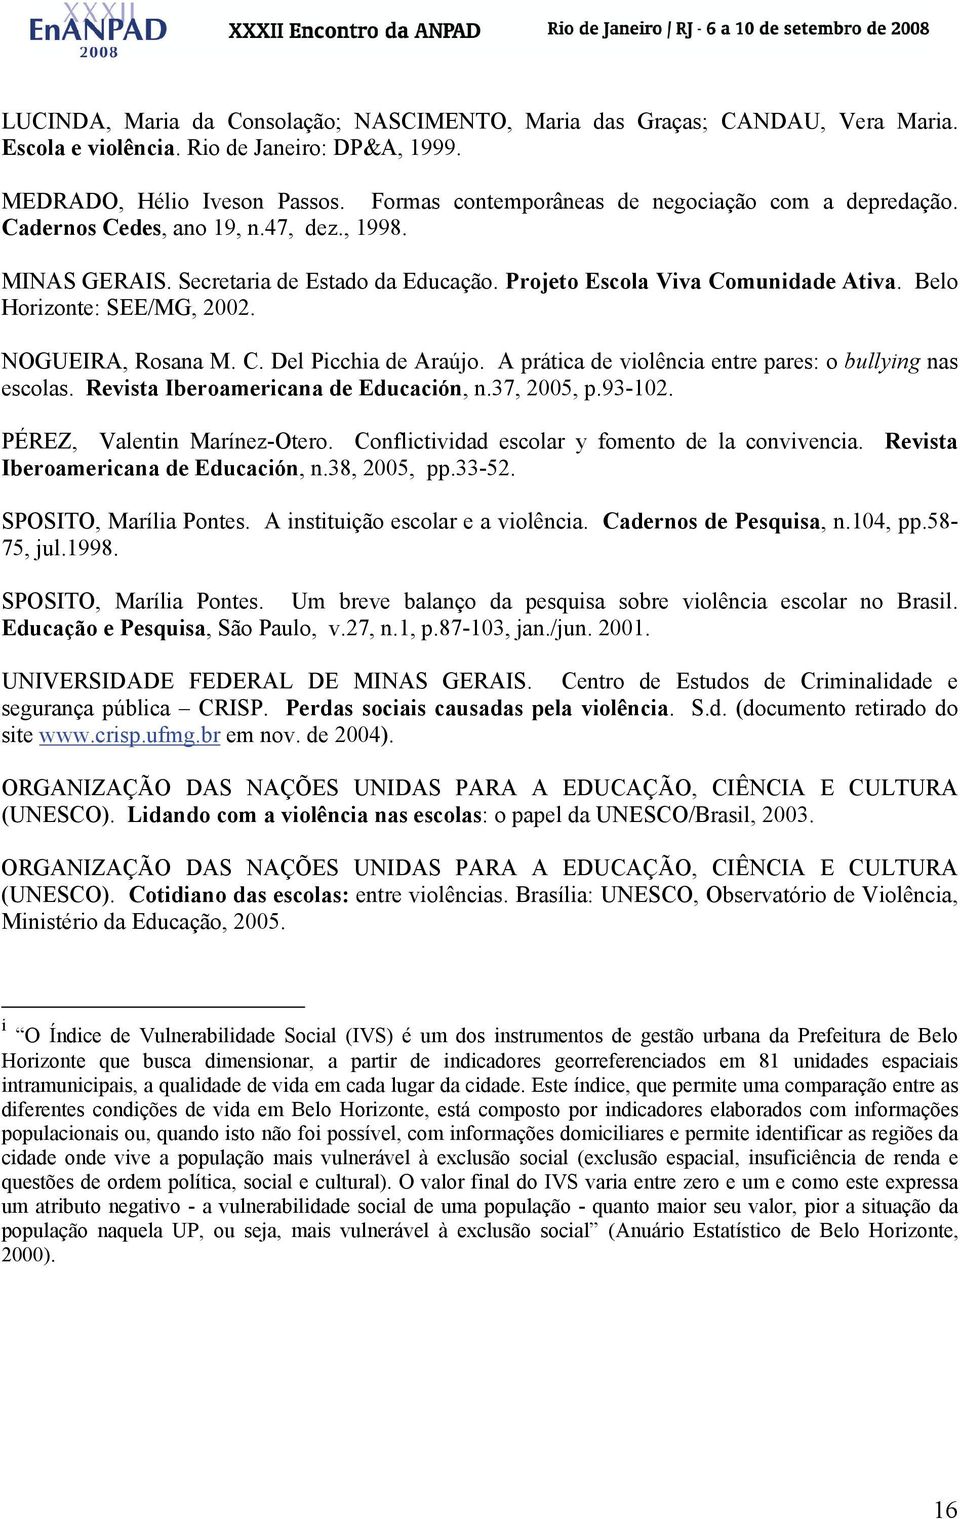 Belo Horizonte: SEE/MG, 2002. NOGUEIRA, Rosana M. C. Del Picchia de Araújo. A prática de violência entre pares: o bullying nas escolas. Revista Iberoamericana de Educación, n.37, 2005, p.93-102.